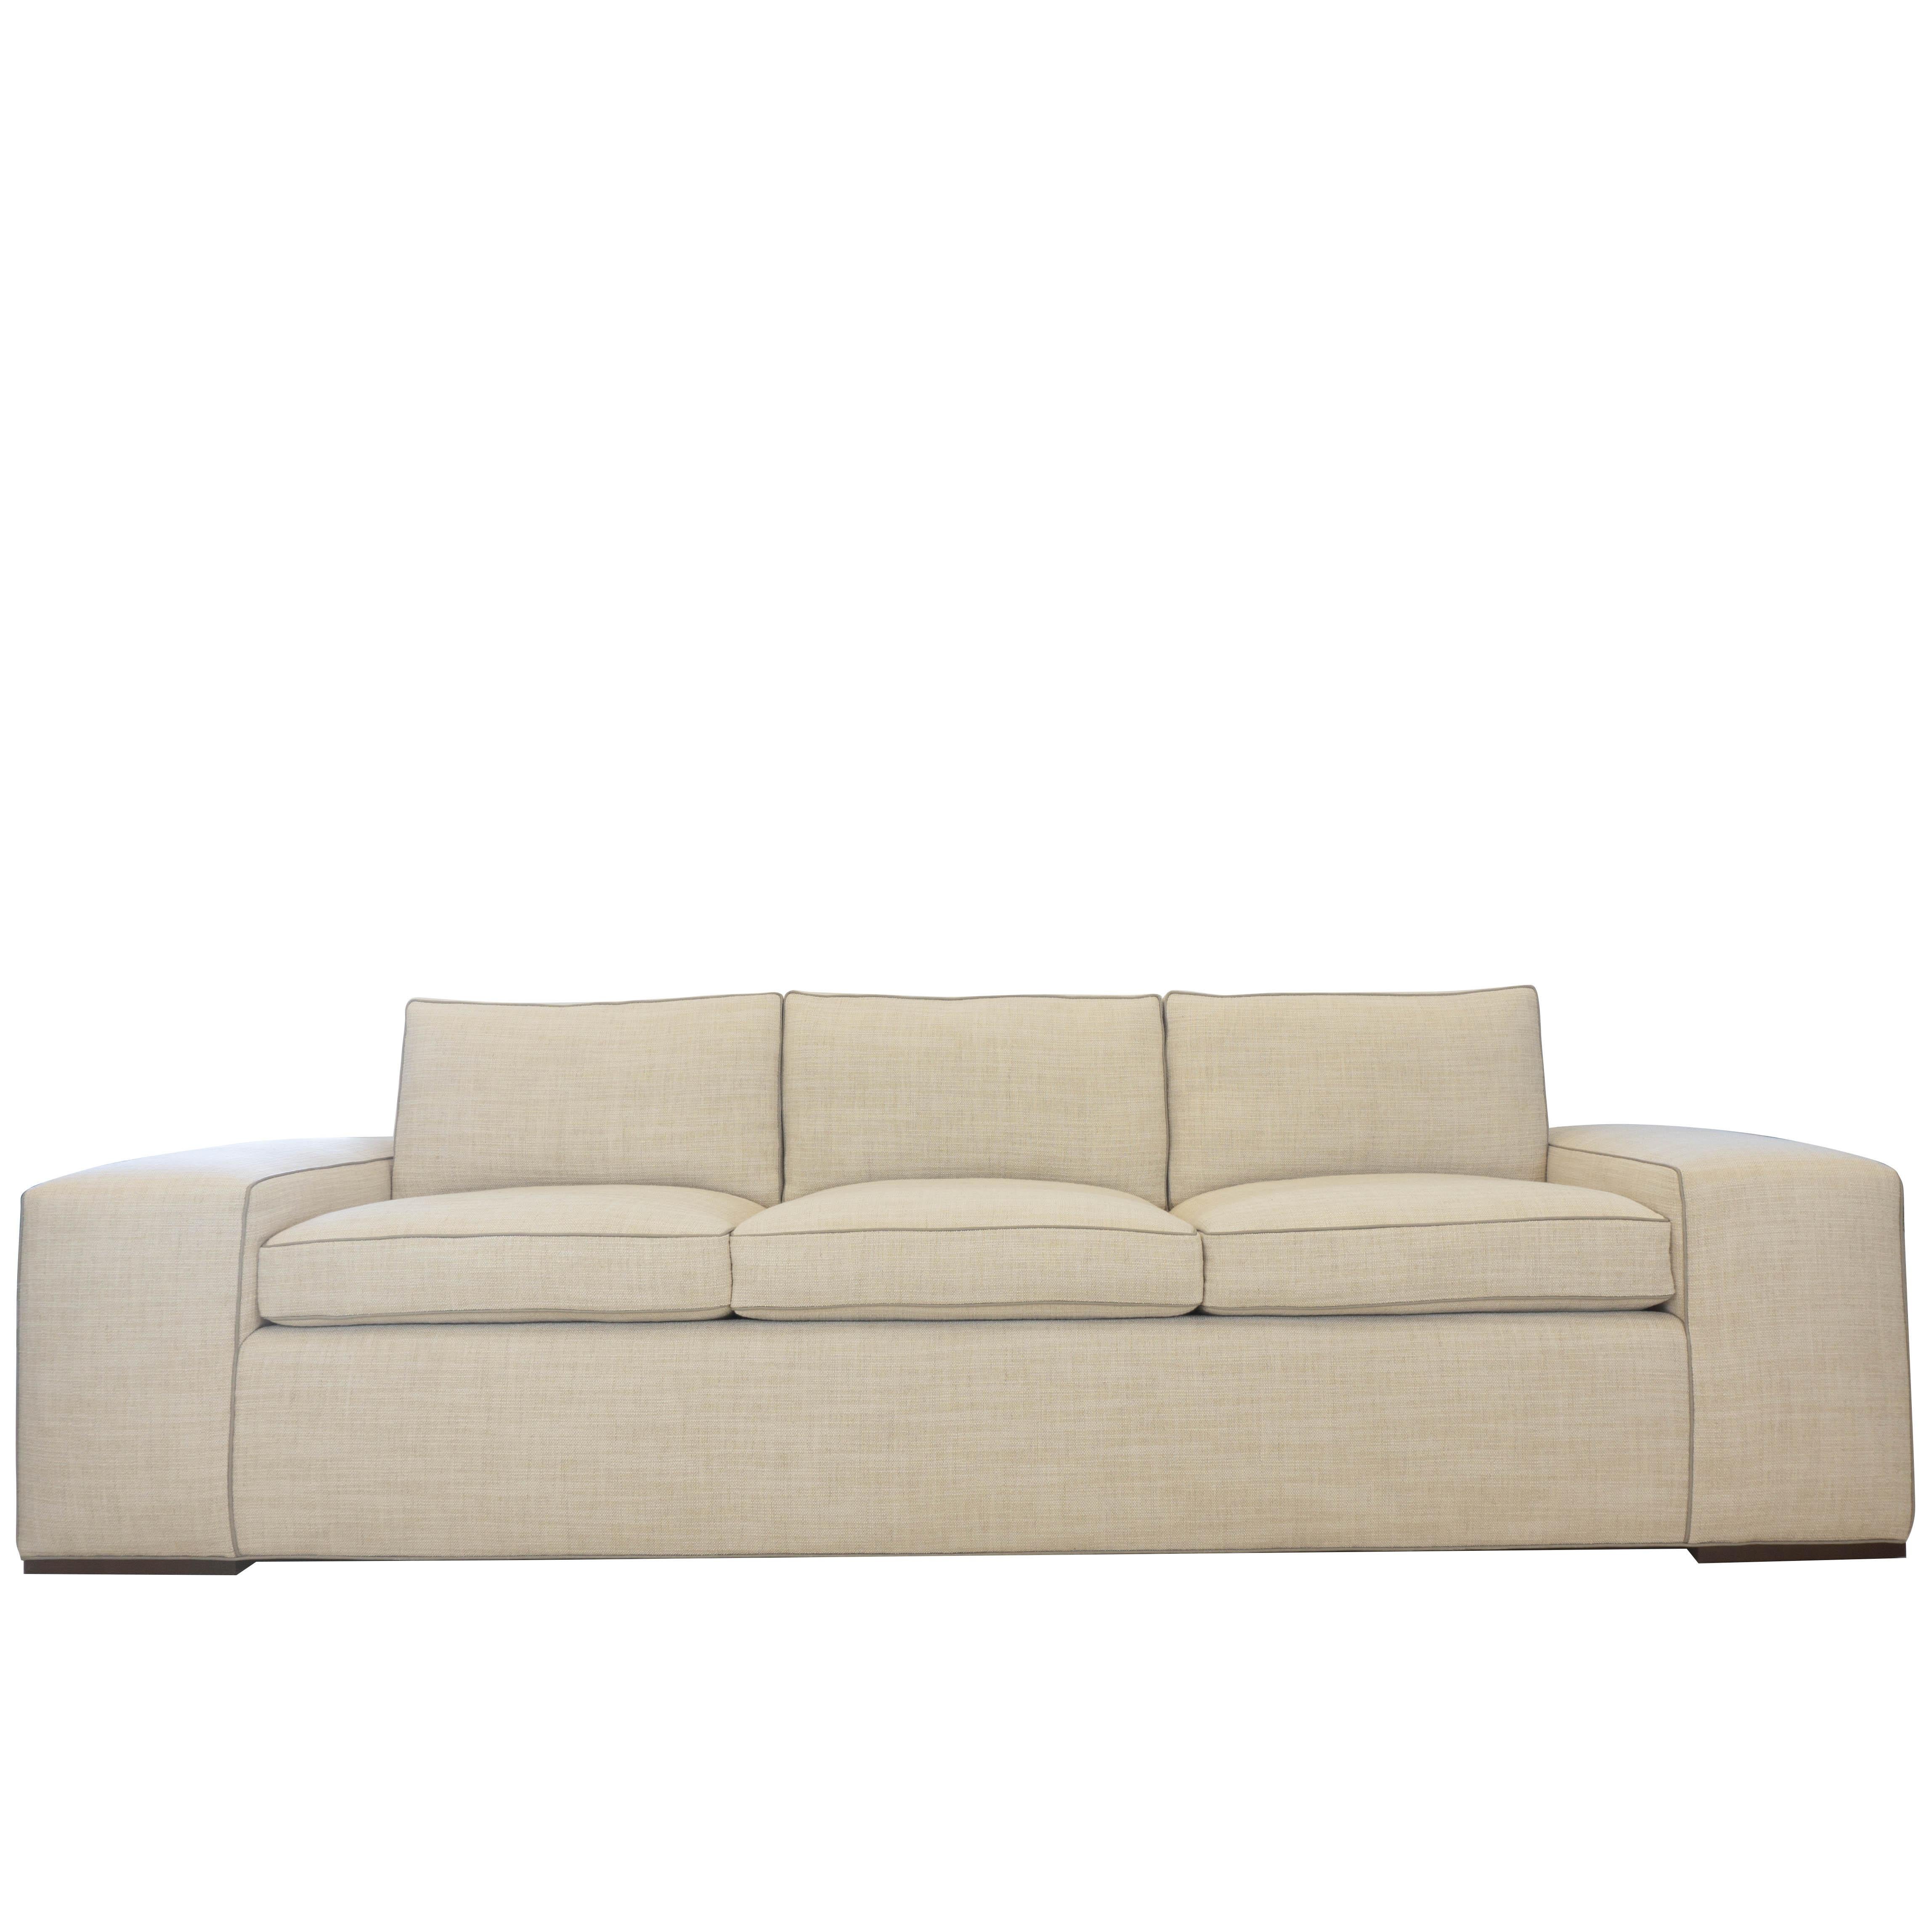 Modernes Sofa mit quadratischen Armlehnen und Kunstlederumrandung. Der Arm ist 13